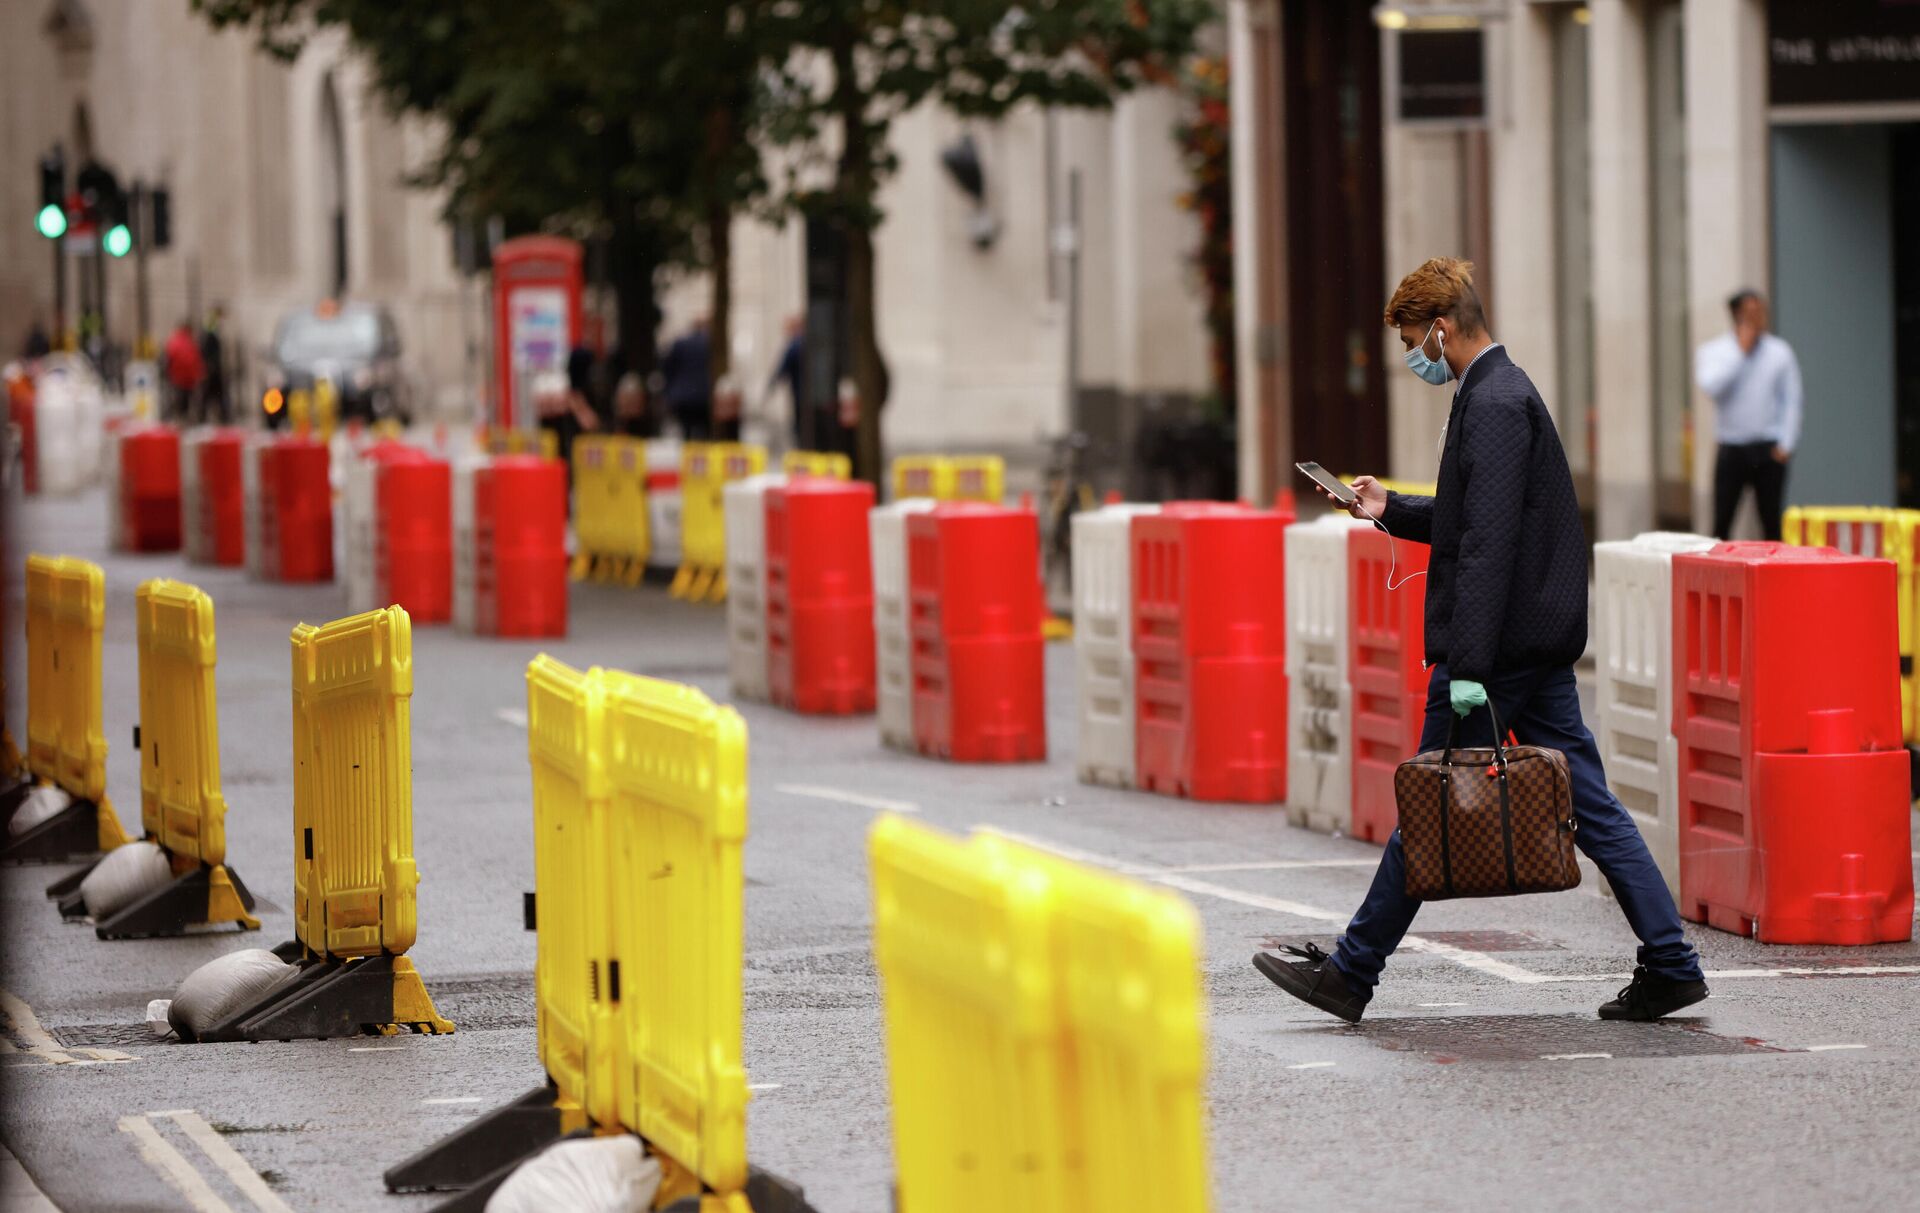 Мужчина в защитной маске переходит дорогу с установленными на ней барьерами для социального дистанцирования в Лондоне - РИА Новости, 1920, 24.09.2020